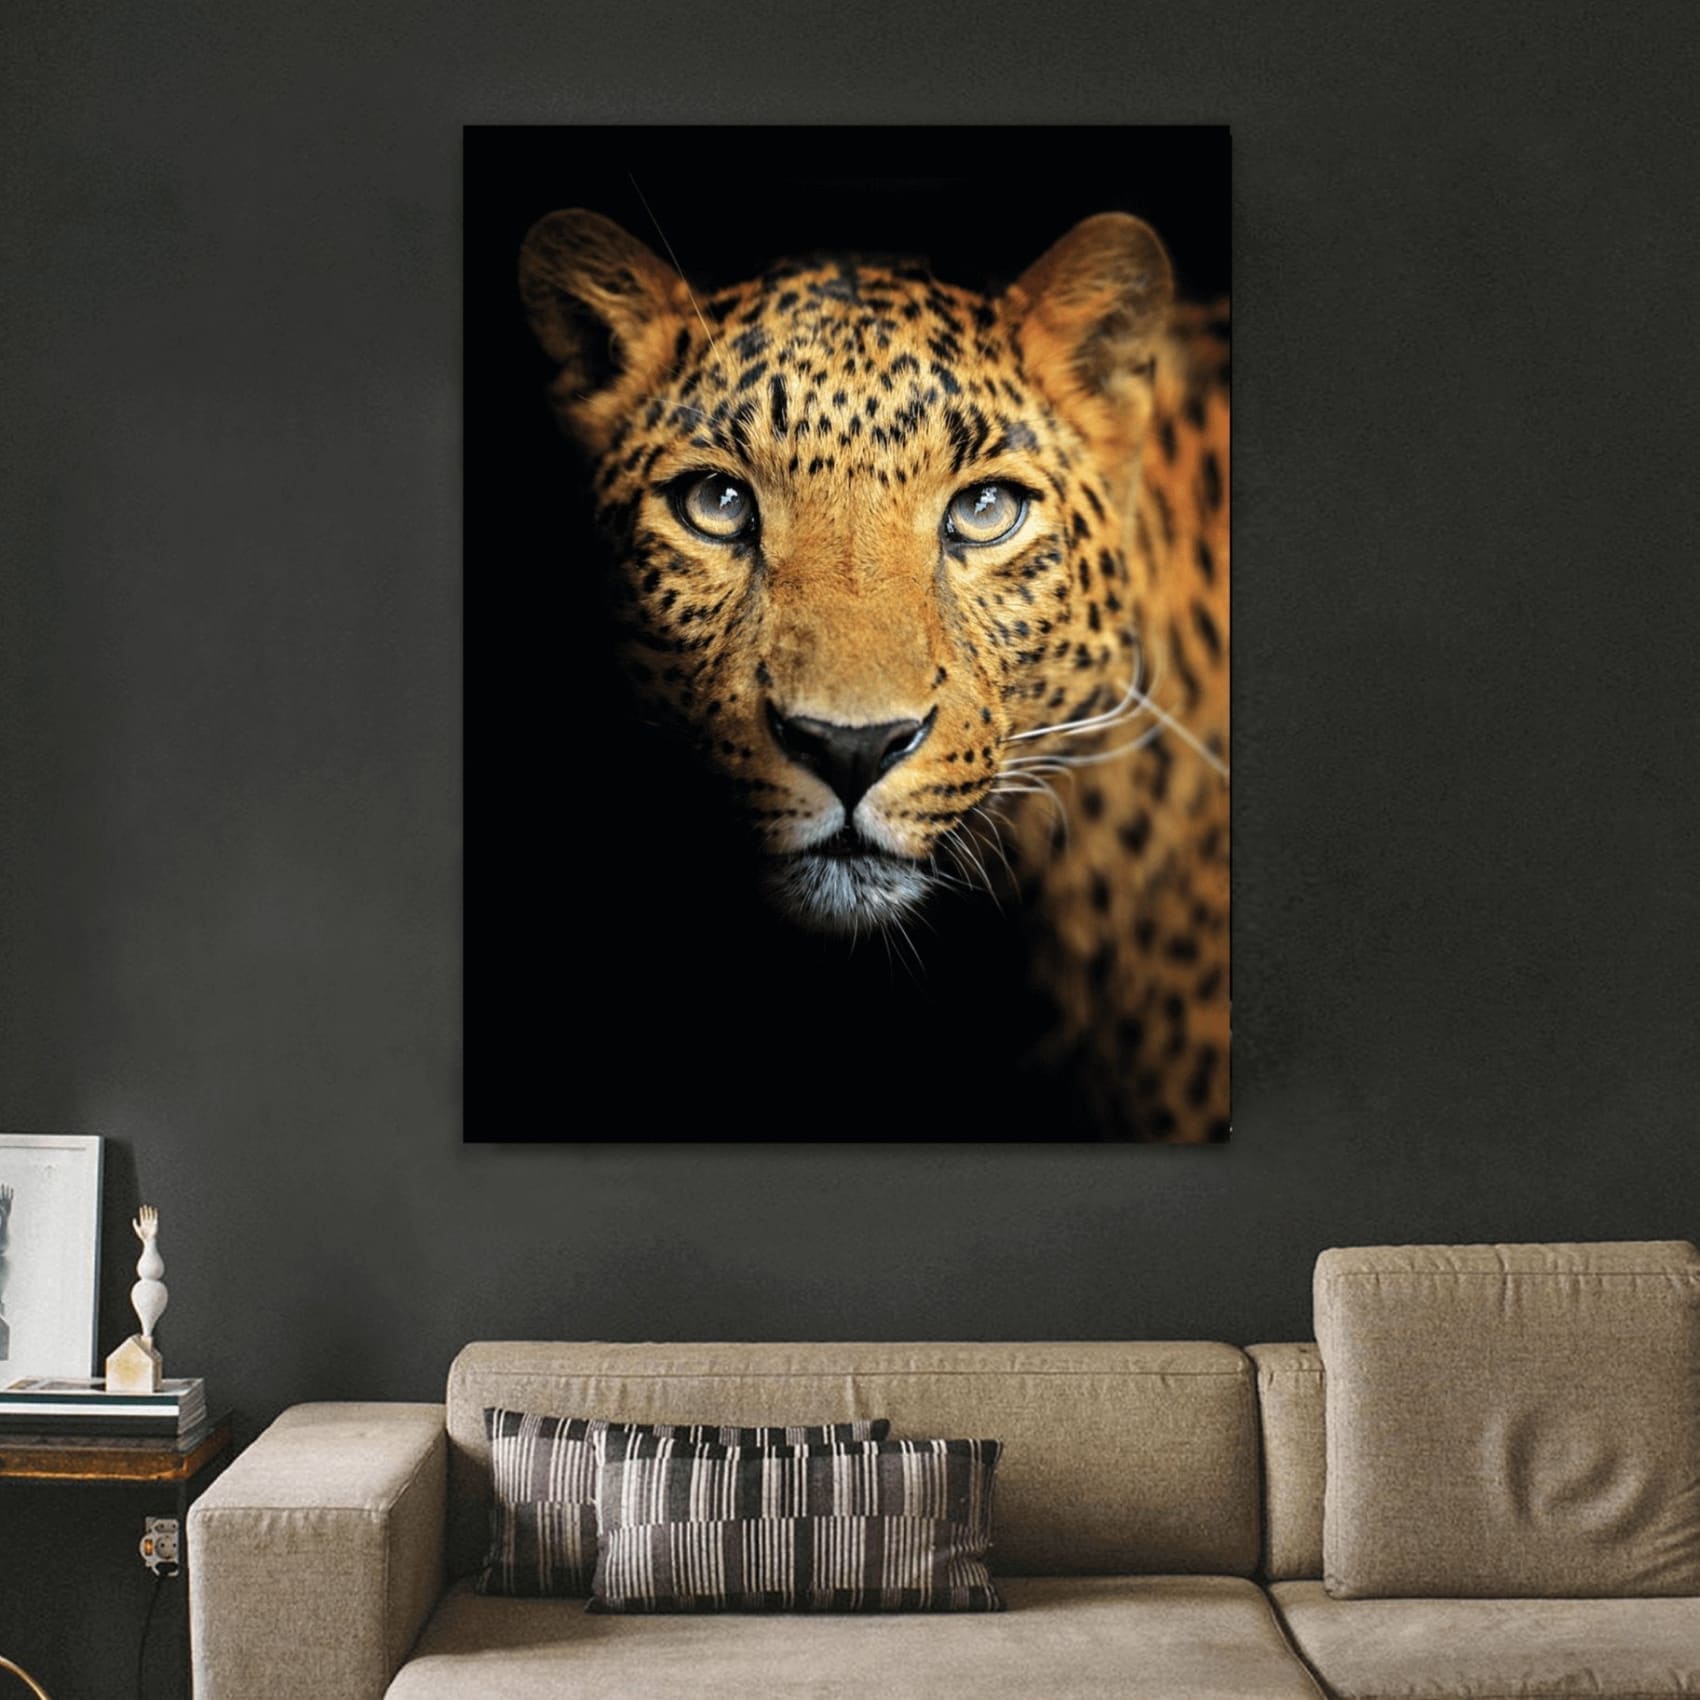 cuadro decorativo, decoración, sala, estudio, habitación, animal, jaguar